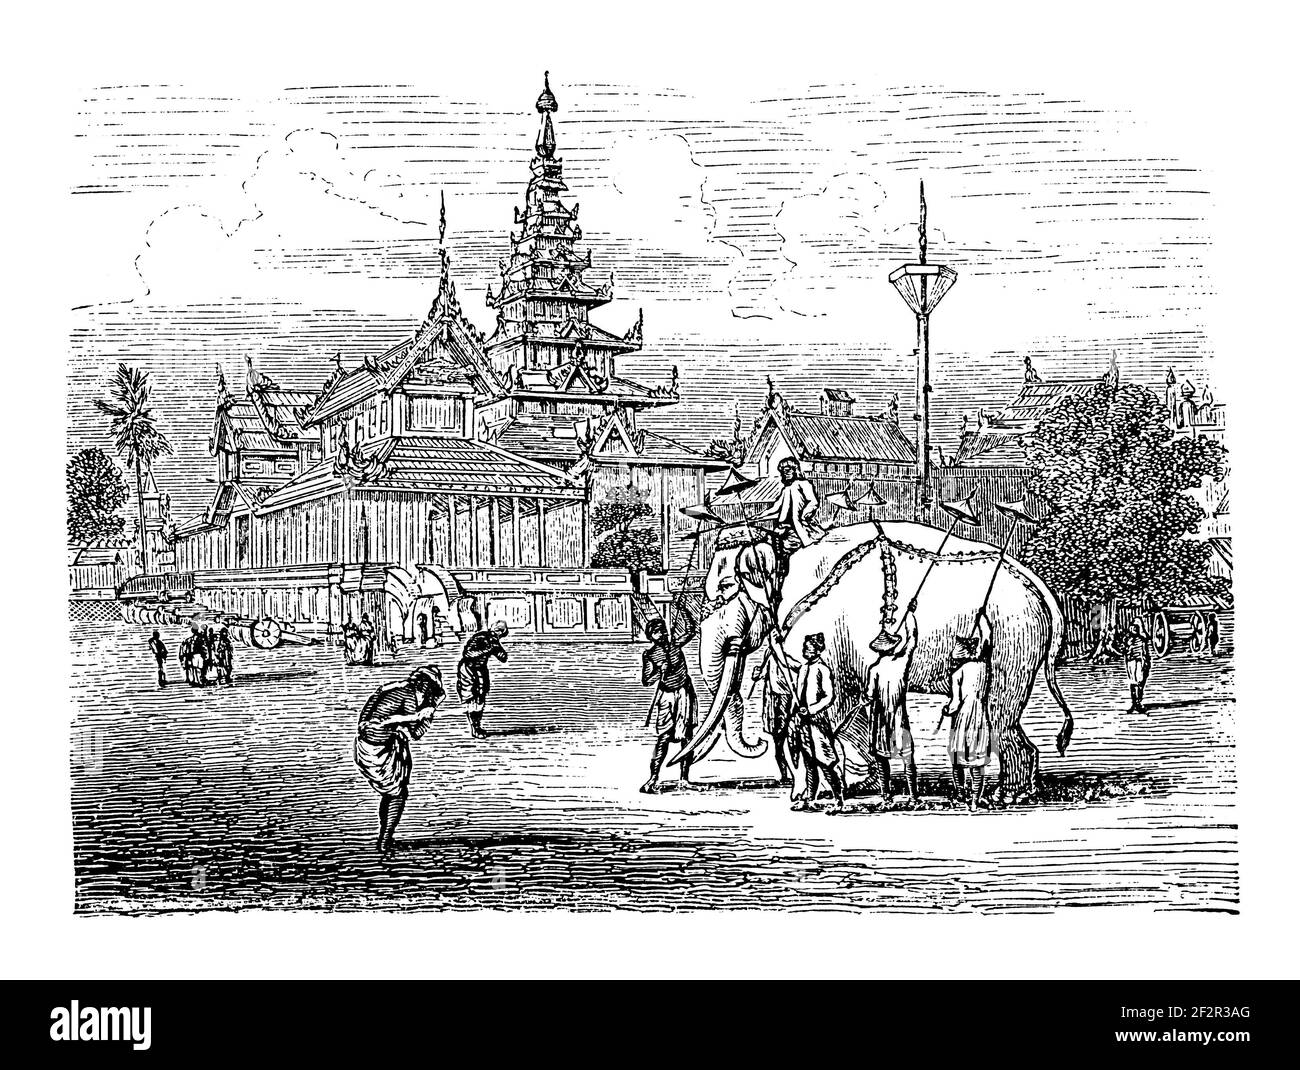 Gravure du XIXe siècle du palais royal du roi Bodawpaya à Amarapura, au Myanmar. Illustration publiée dans Systematischer Bilder-Atlas zum Conversa Banque D'Images